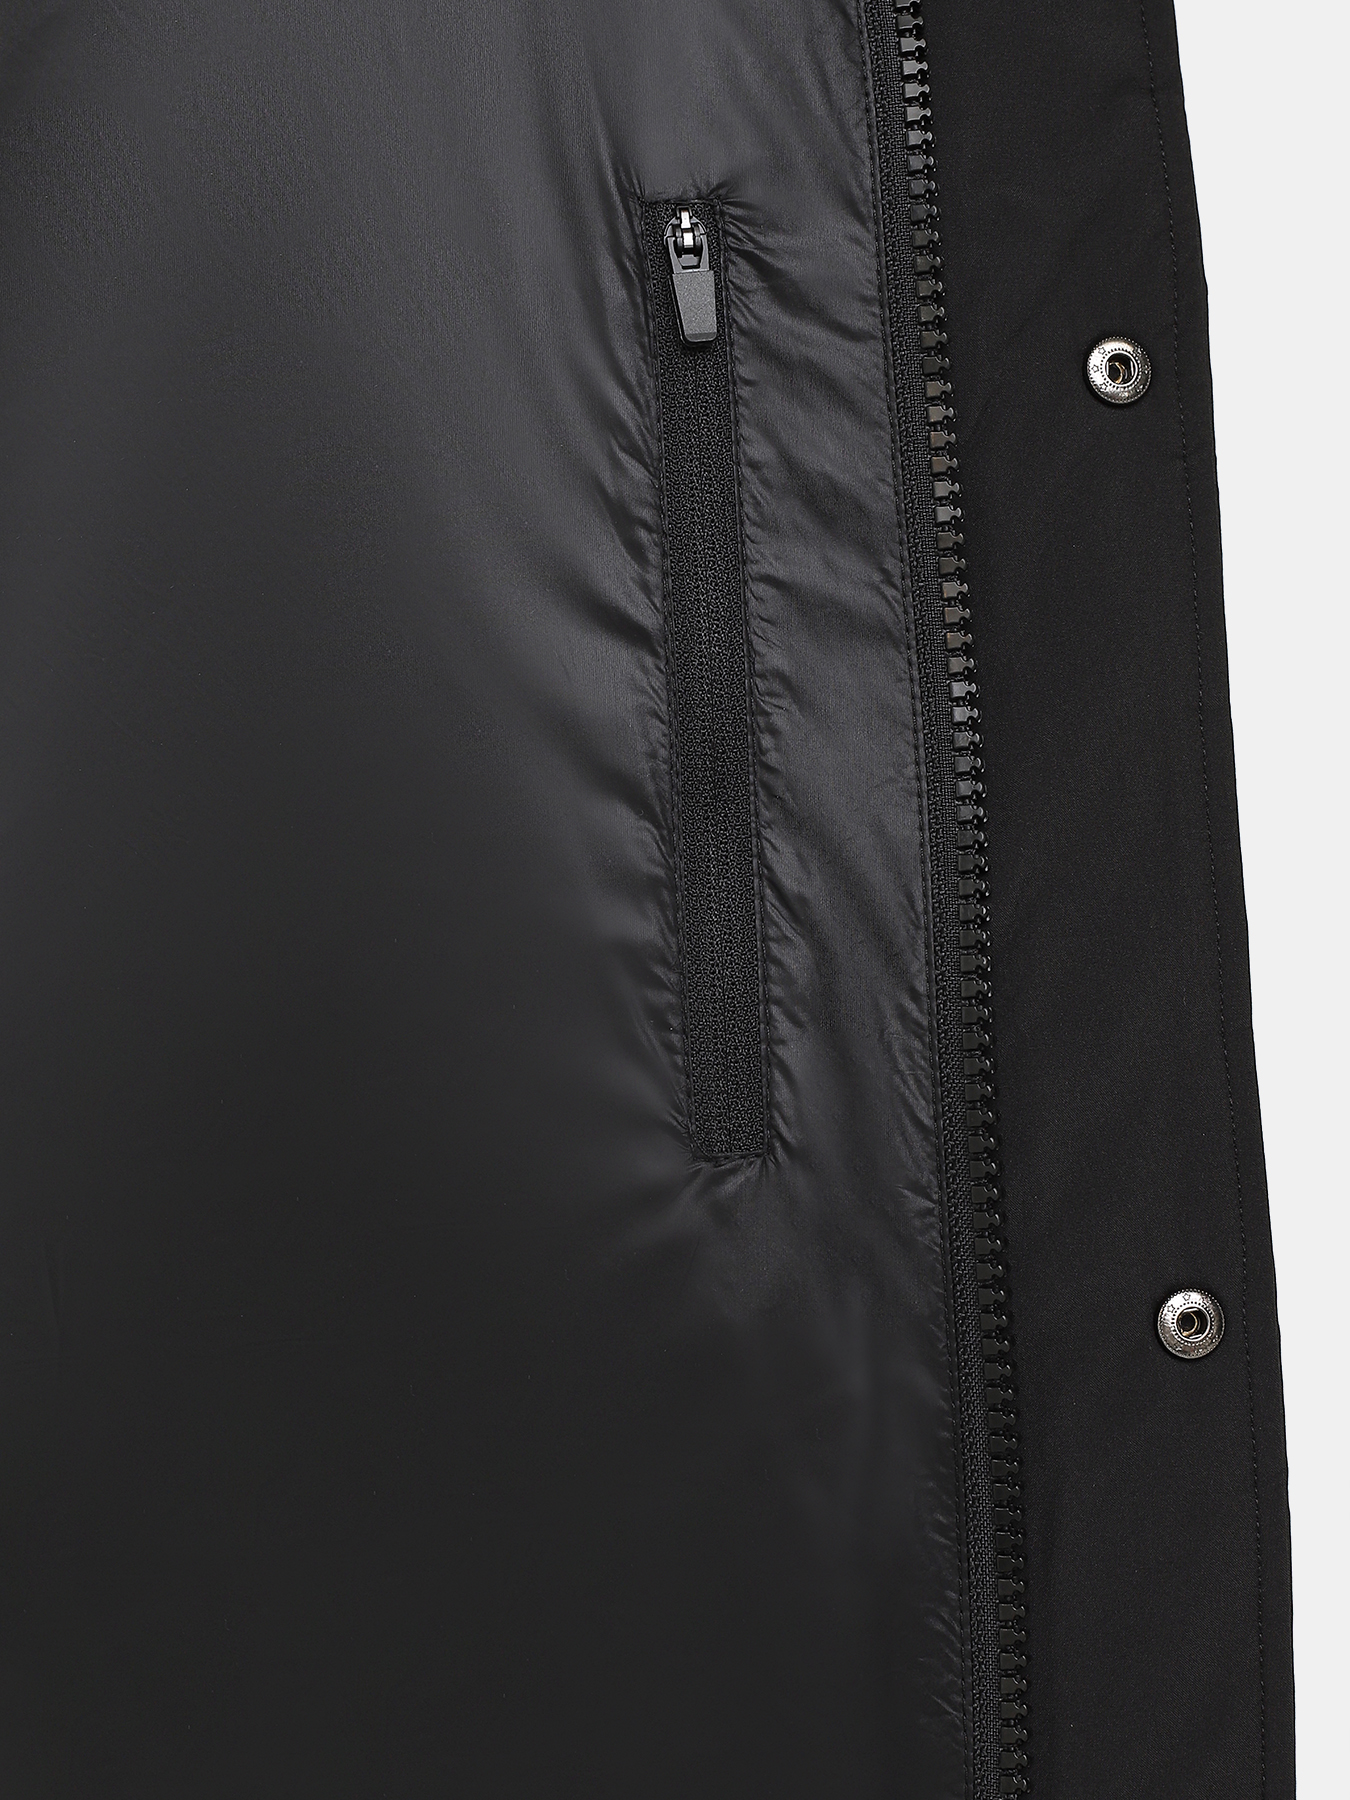 Удлиненная куртка Ritter 385246-027, цвет черный, размер 52 - фото 2